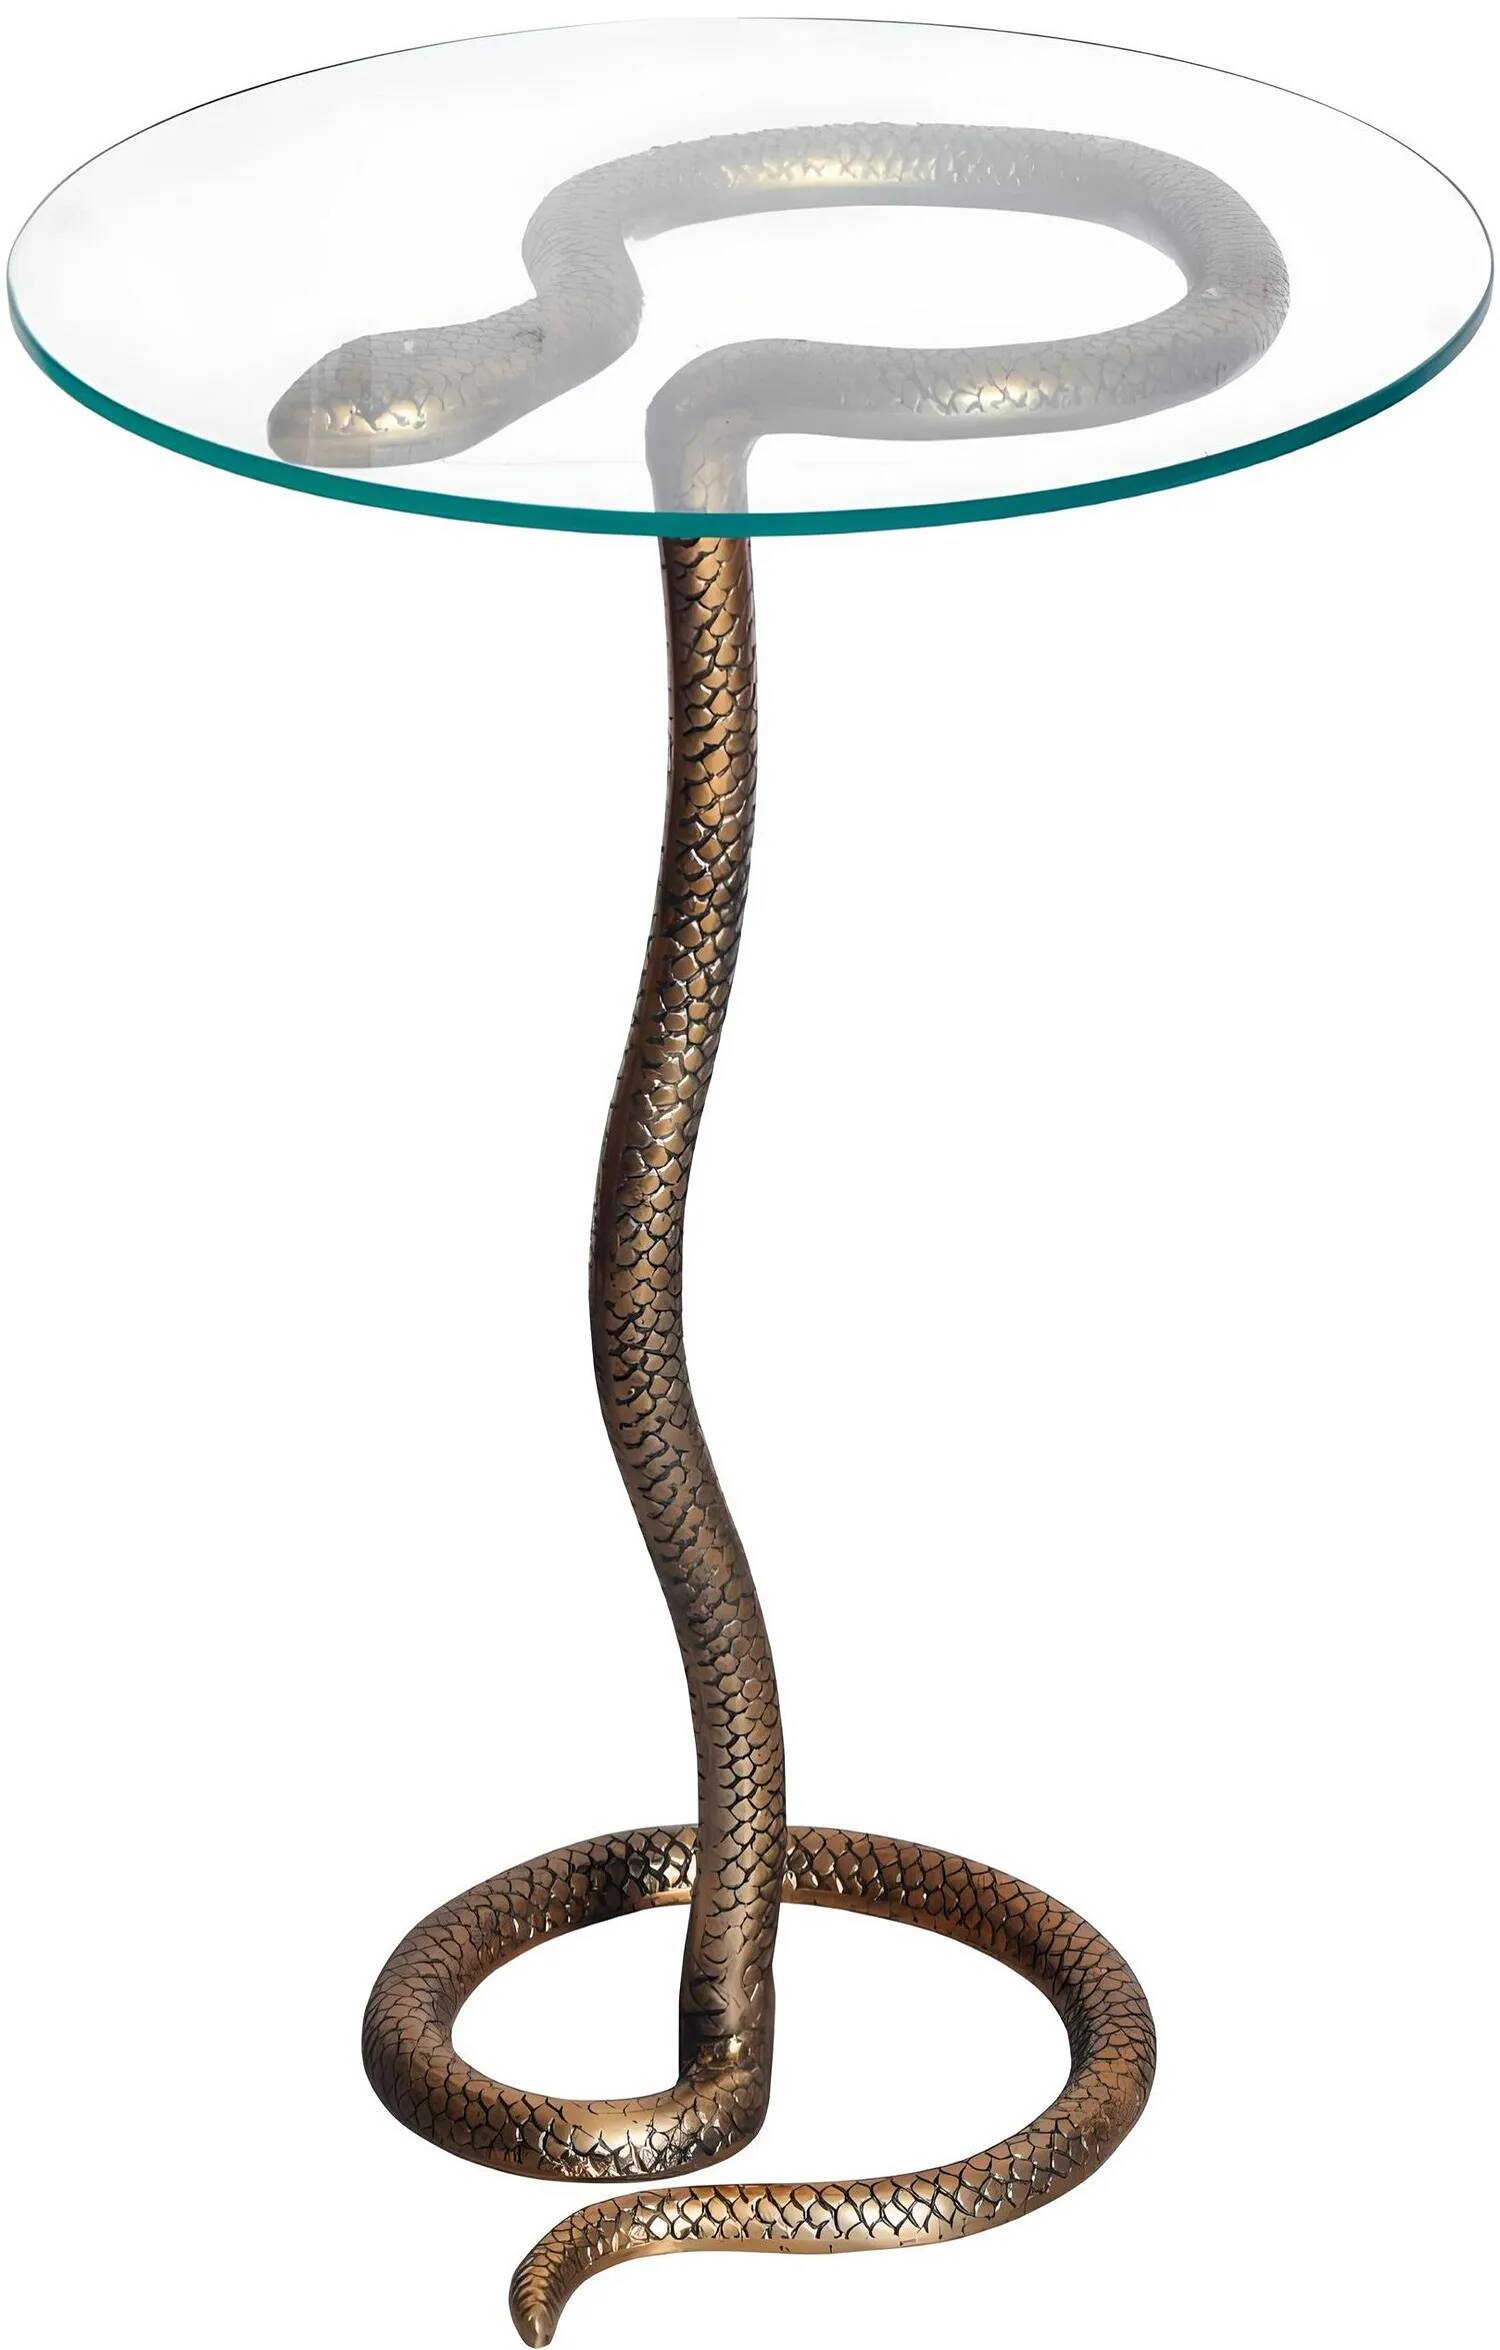 Table d'appoint design serpent en verre et aluminium cuivré